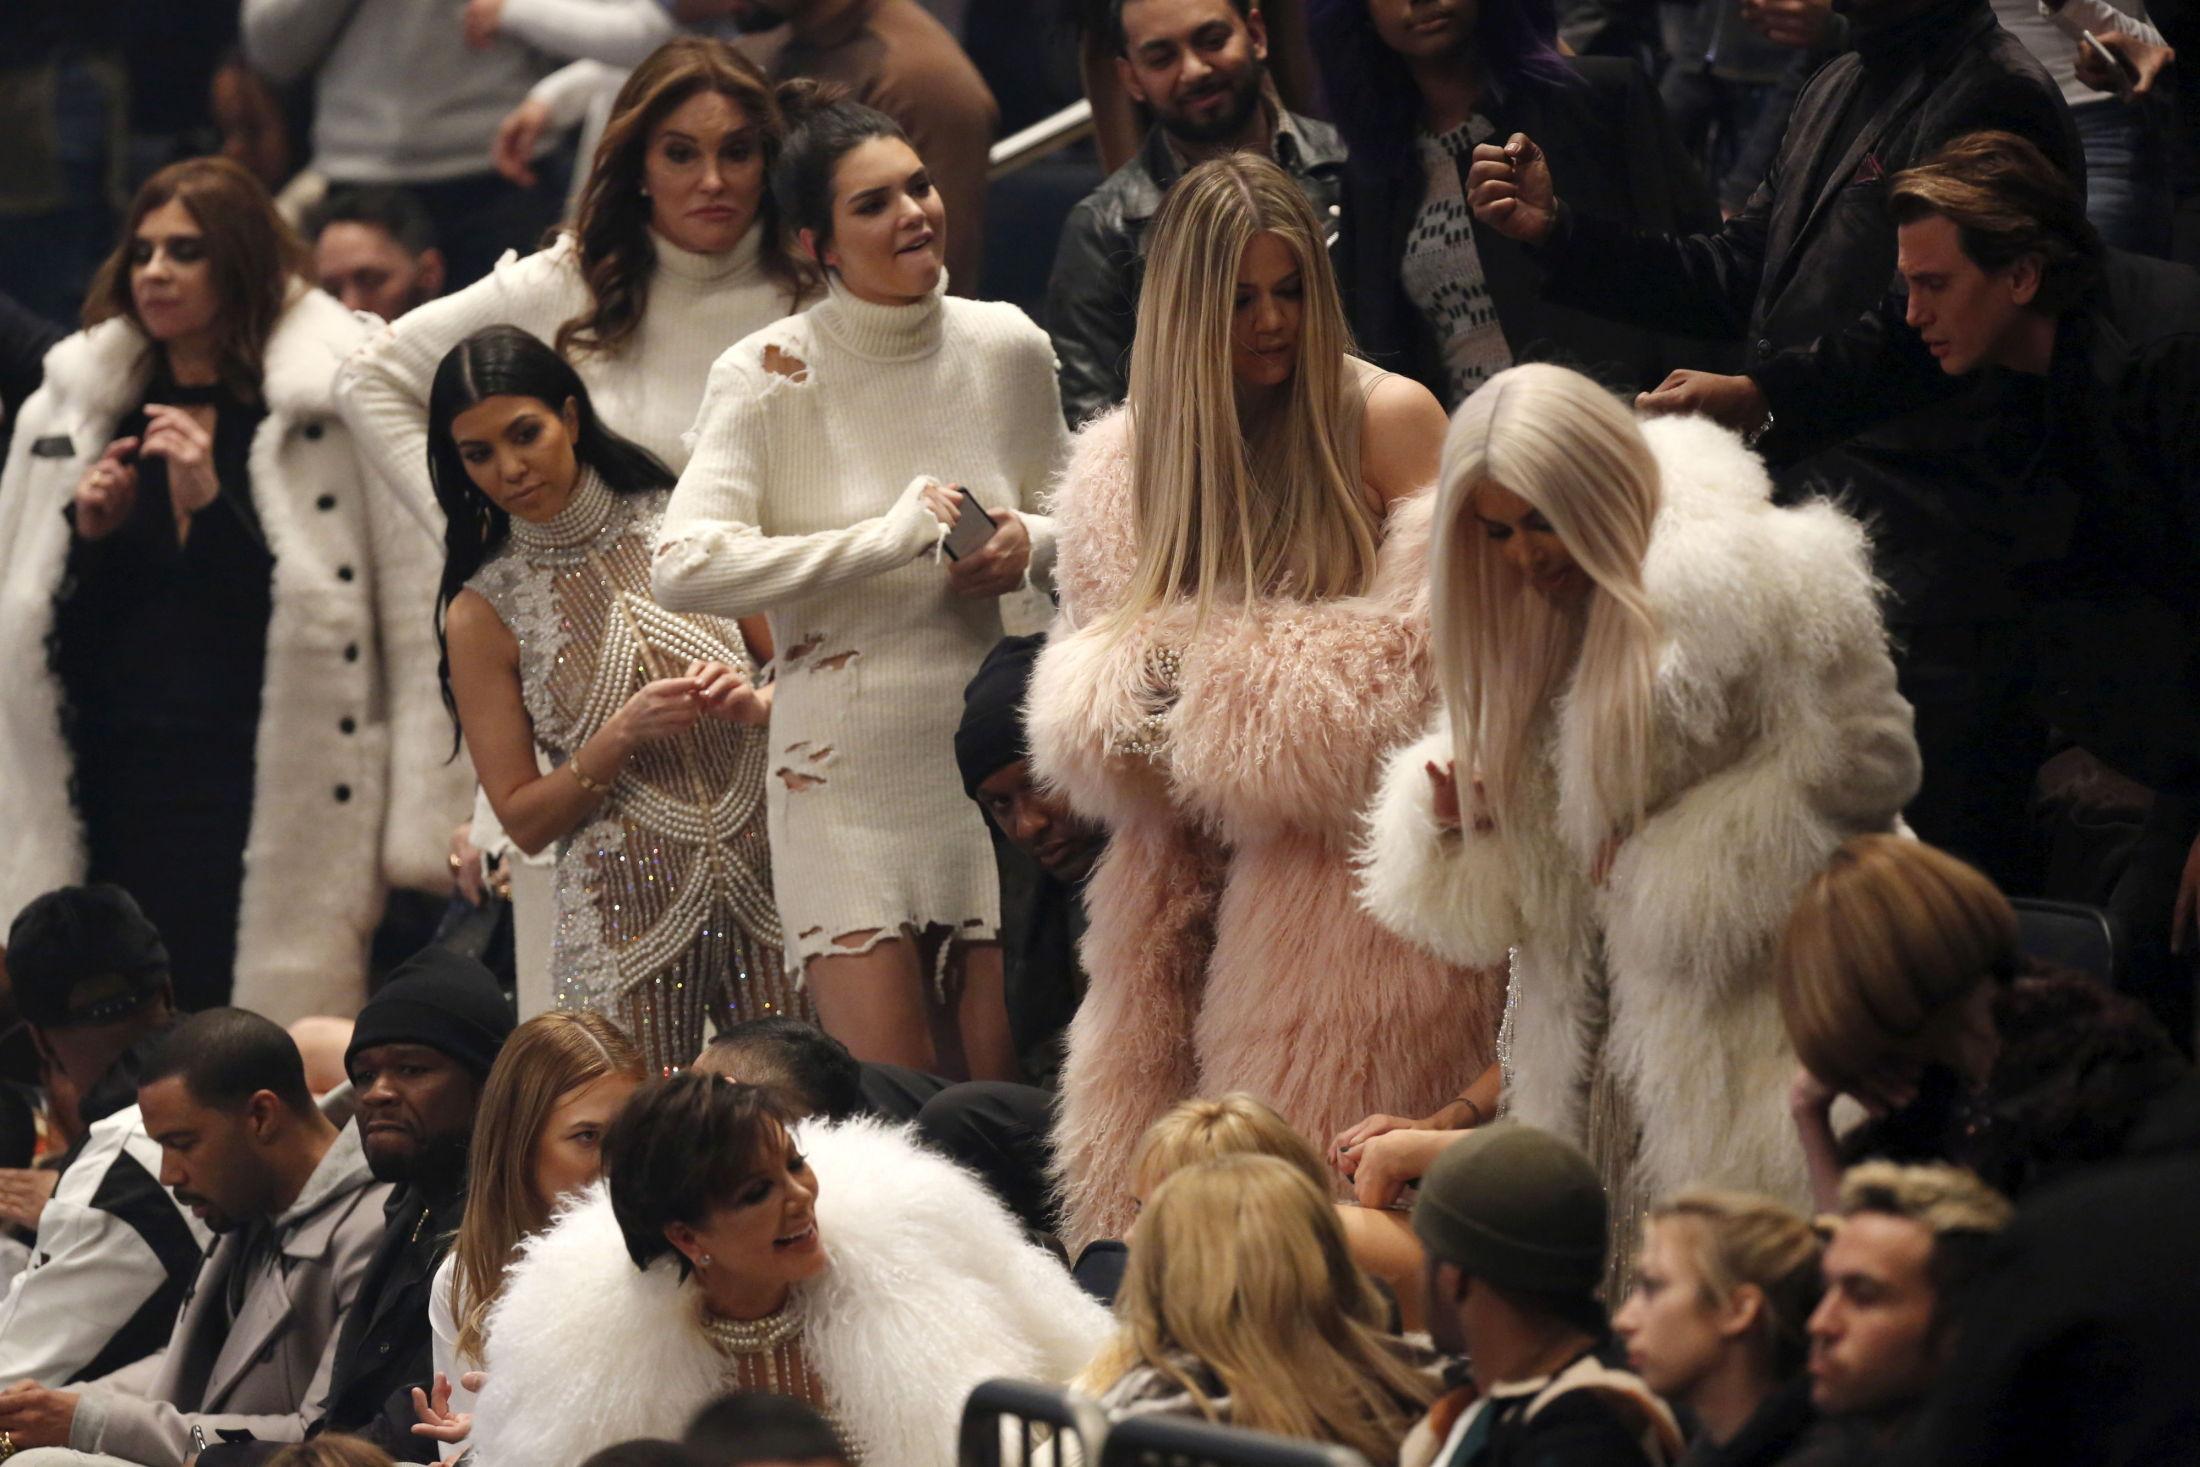 GJENGEN: Mon tro om disse folka dukker opp når noen av de nye Yeezy-butikkene skal åpnes? Her er i alle fall Caitlyn Jenner, Kourtney Kardashian, Kendall Jenner, Khloe Kardashian og Kim Kardashian på Yeezy sesong 3-presentasjonen. Foto: Reuters